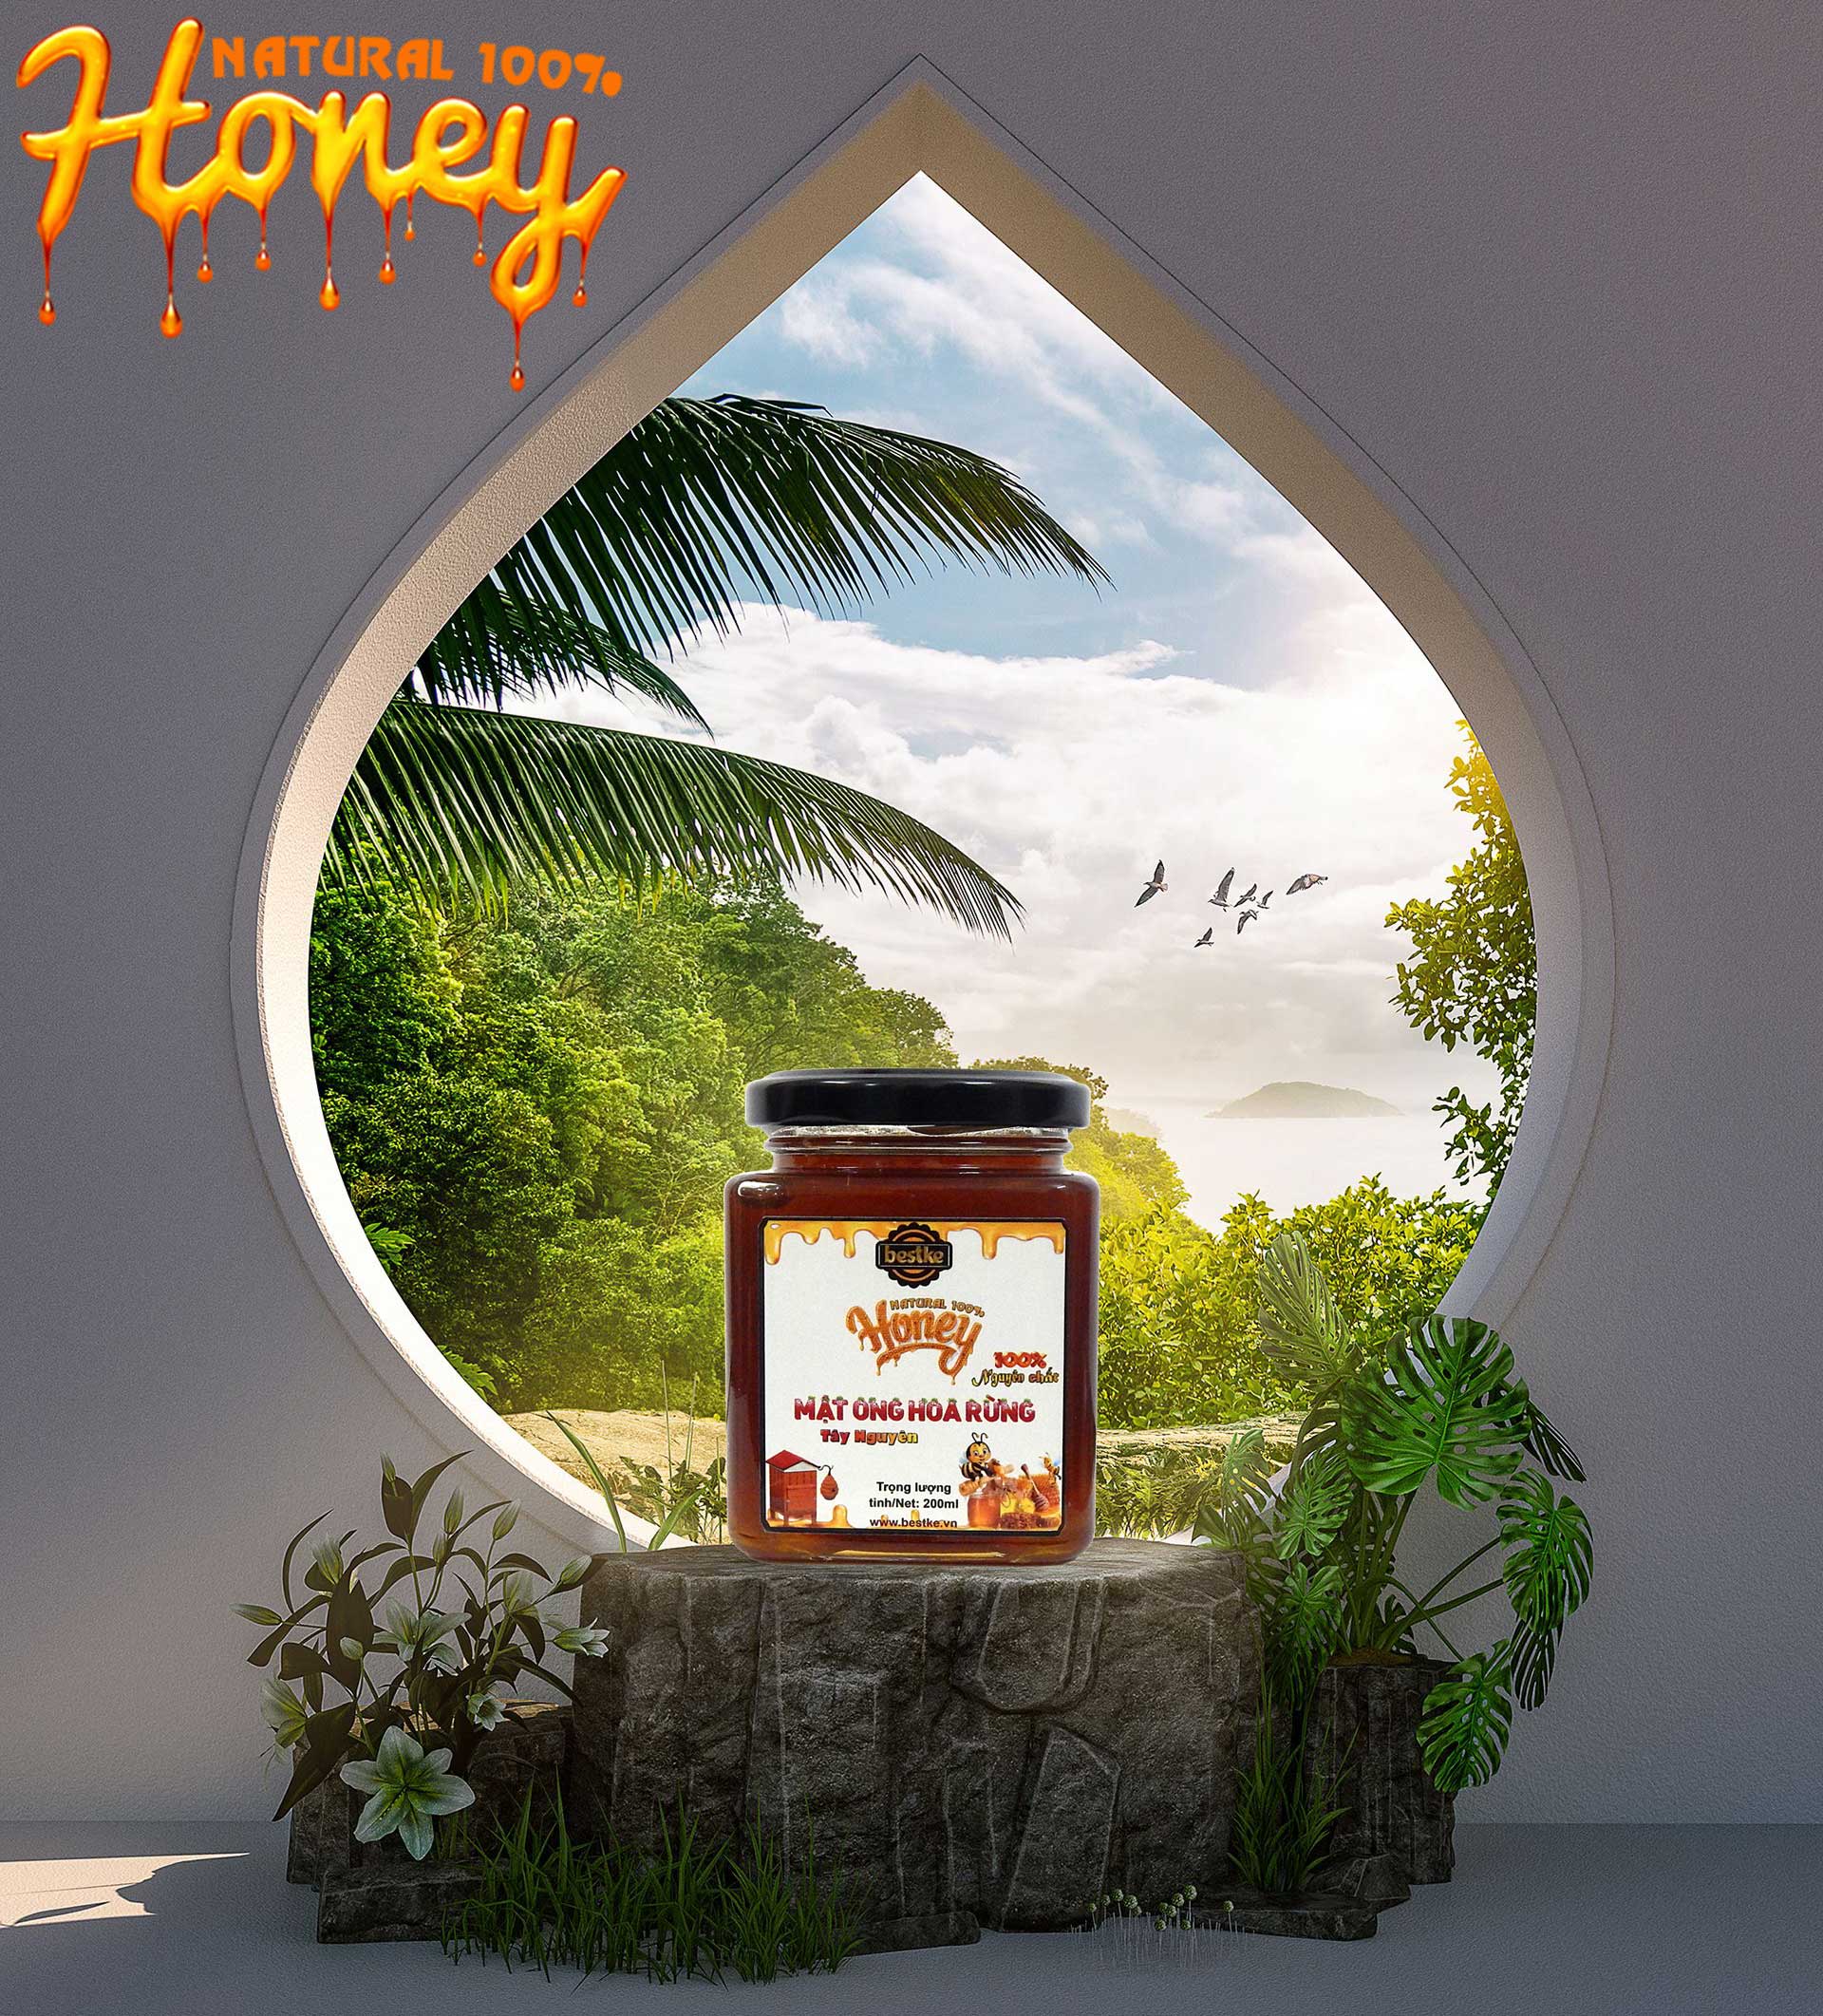 mật ong hoa rừng tây nguyên, nguyên chất, hũ 200ml, 100% natural honey, bestke 5